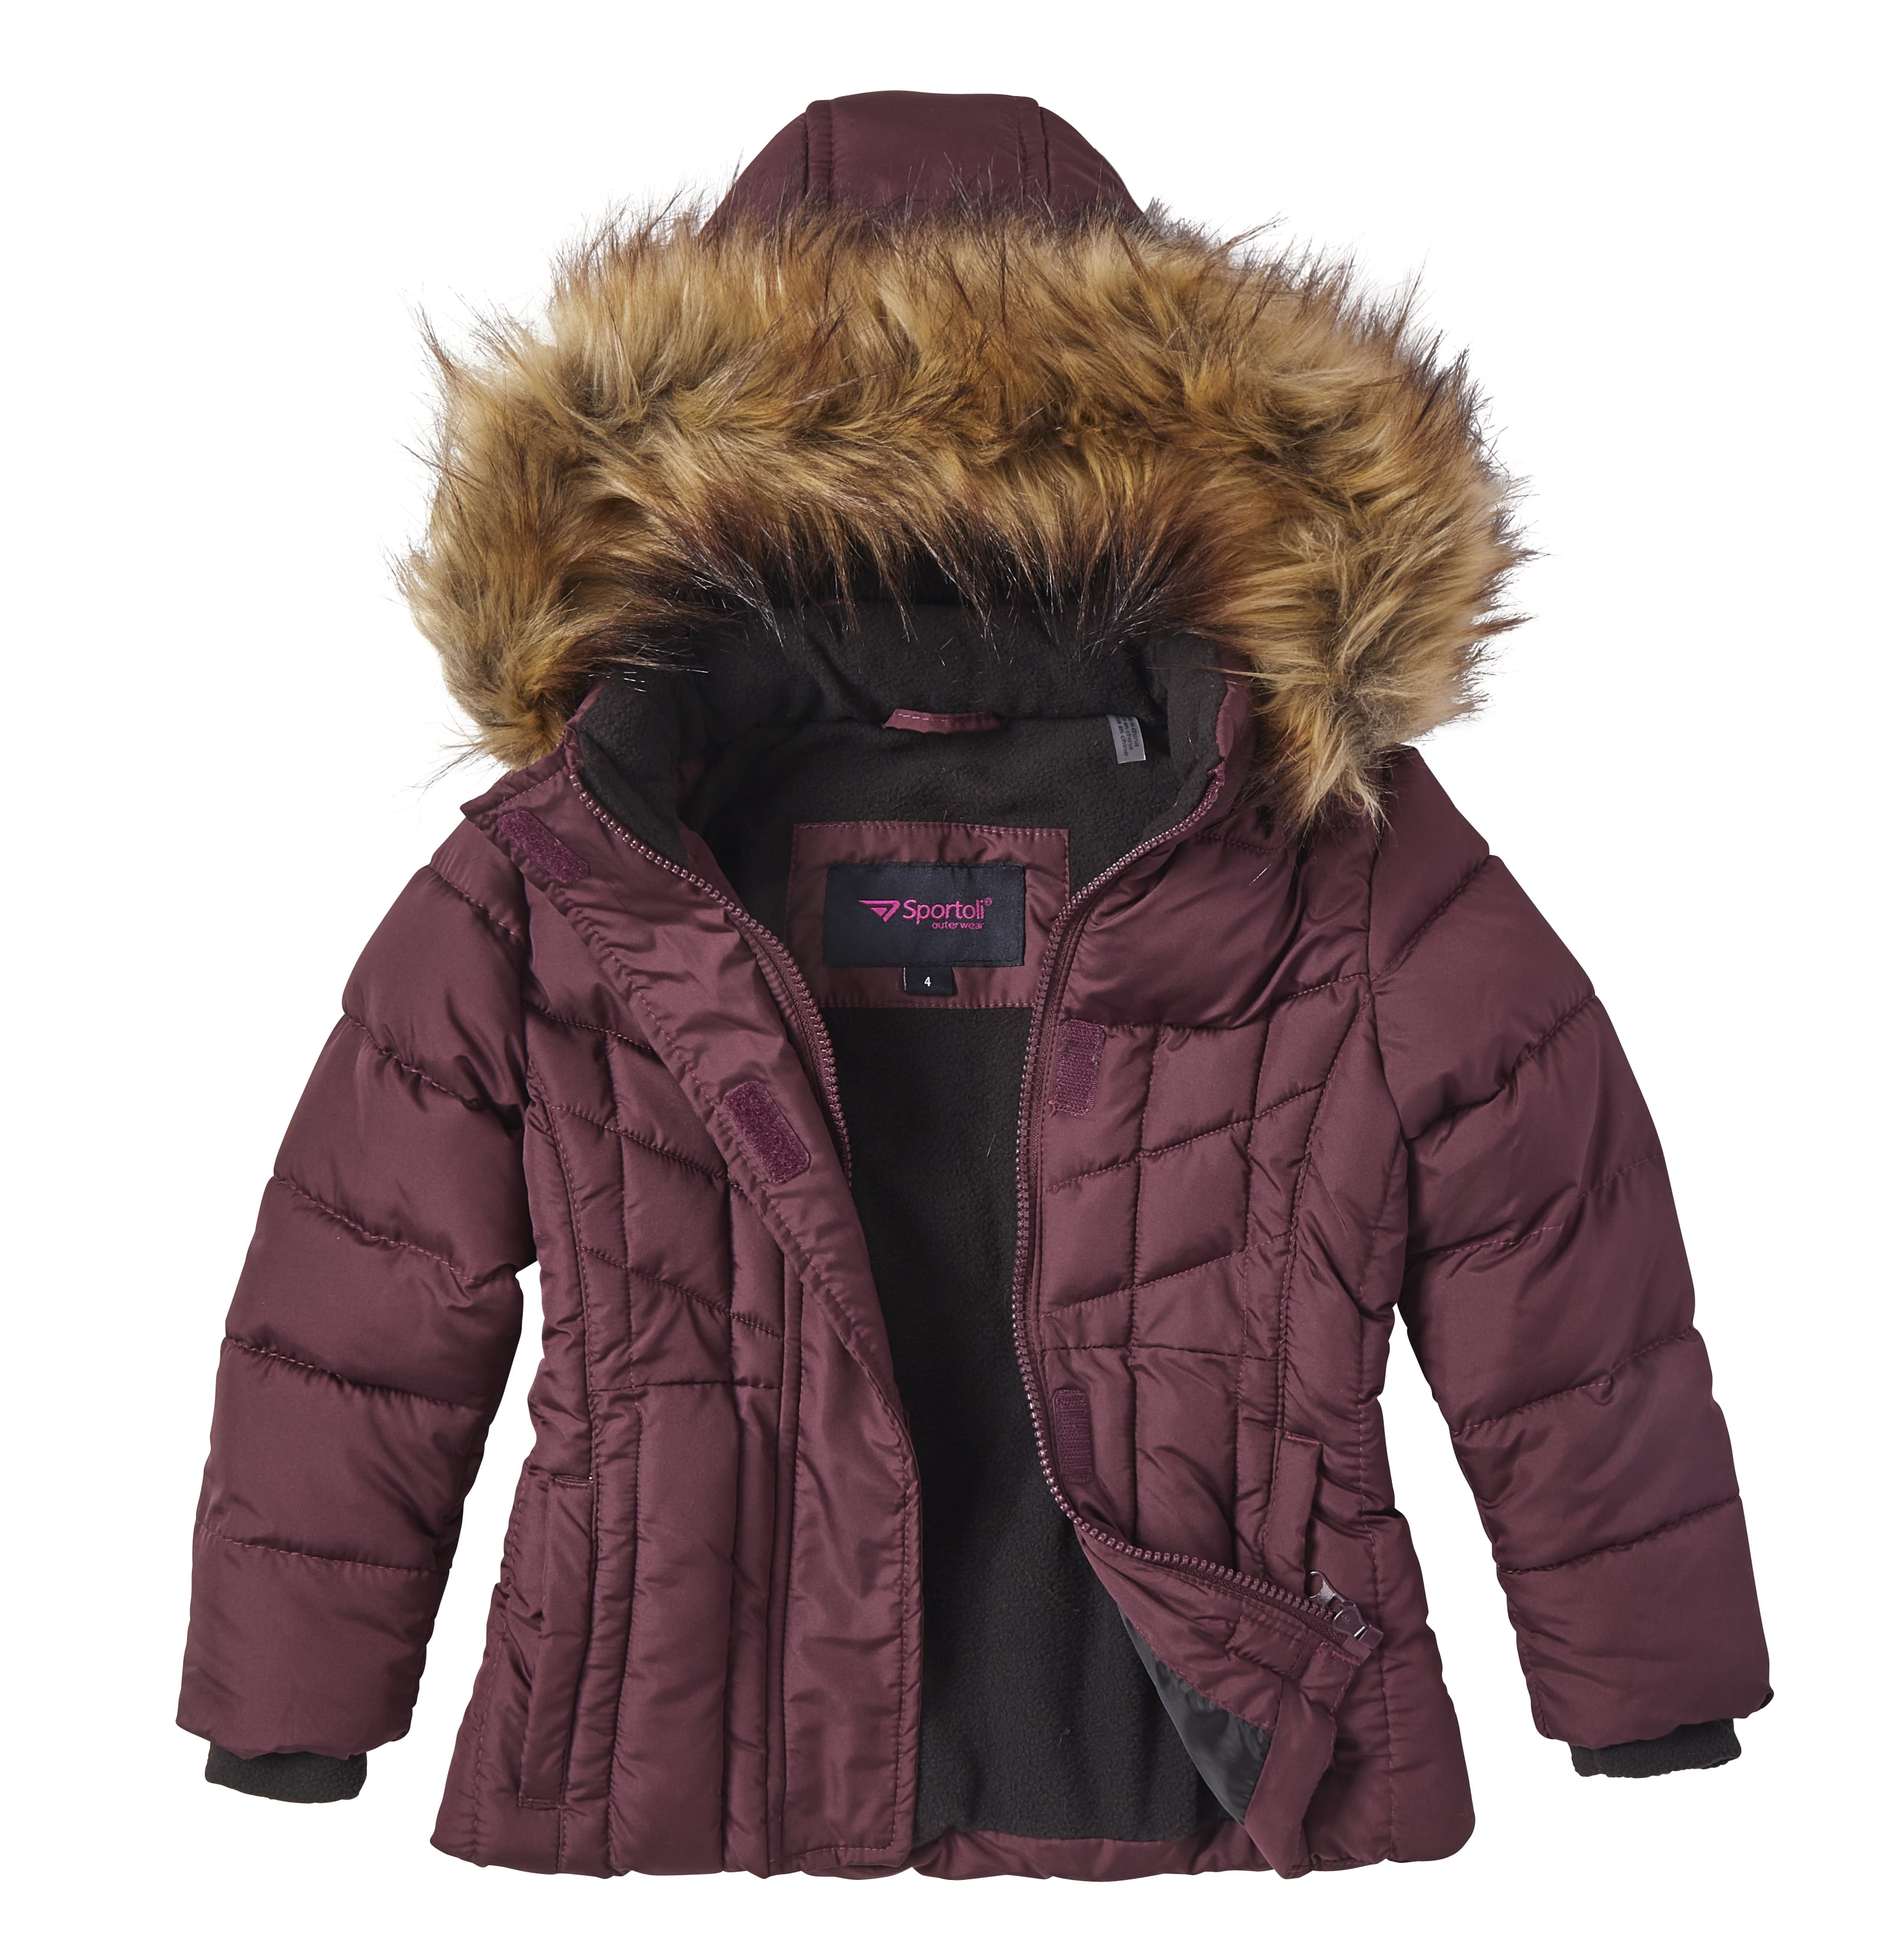  Sportoli Womens Winter Coat Reversible Faux Fur Lined